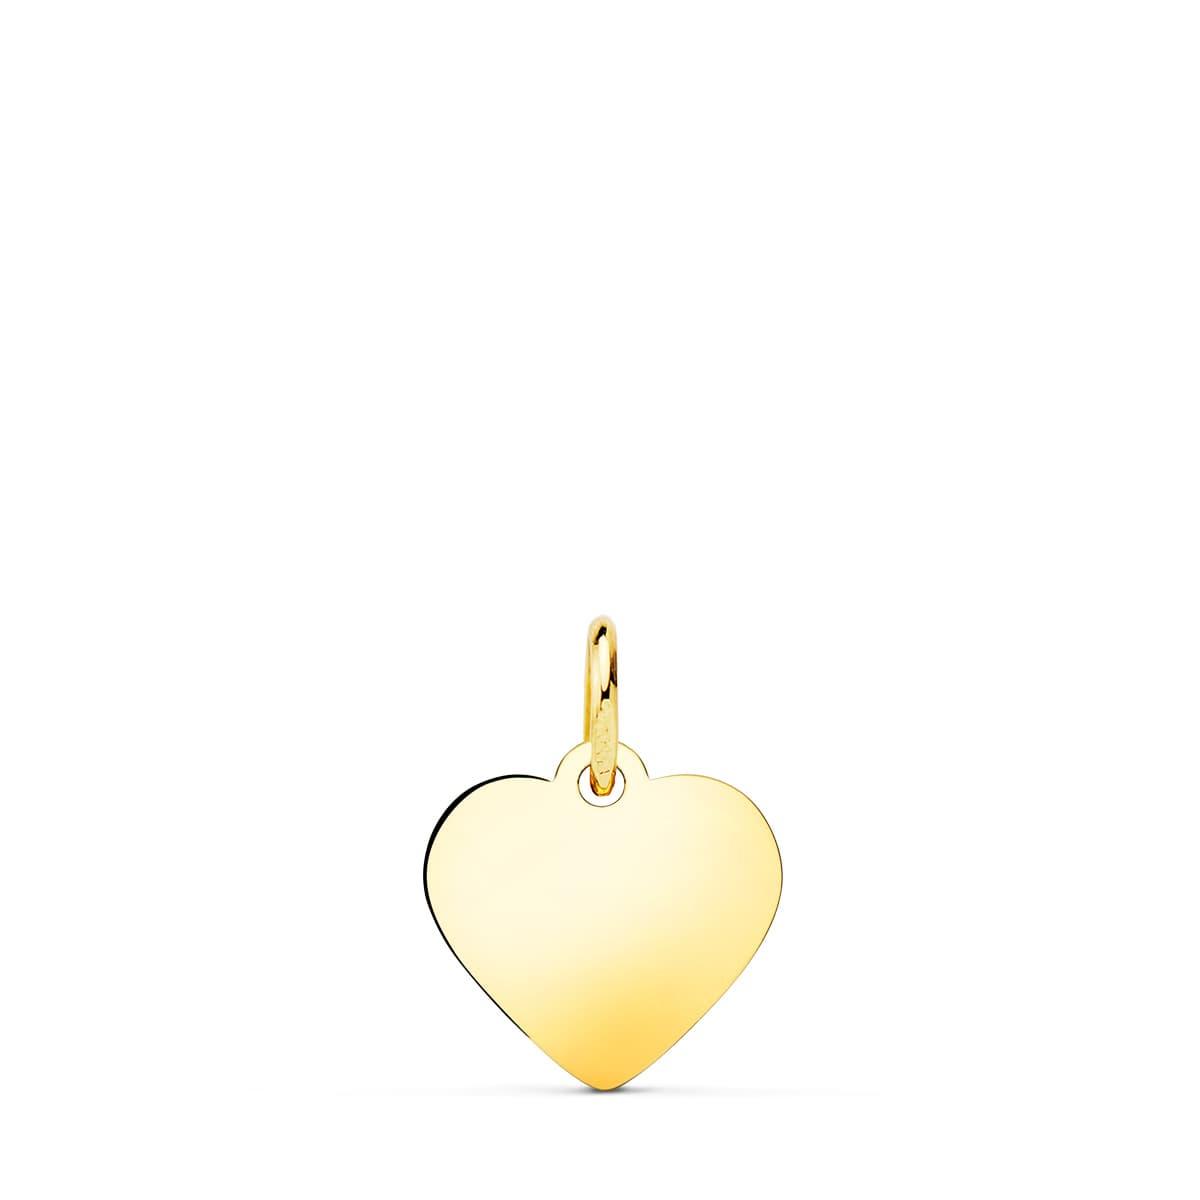 Pendentif ou jeton "Tendre cœur" en or jaune 18 carats, finition polie brillante - Maison Gabriel